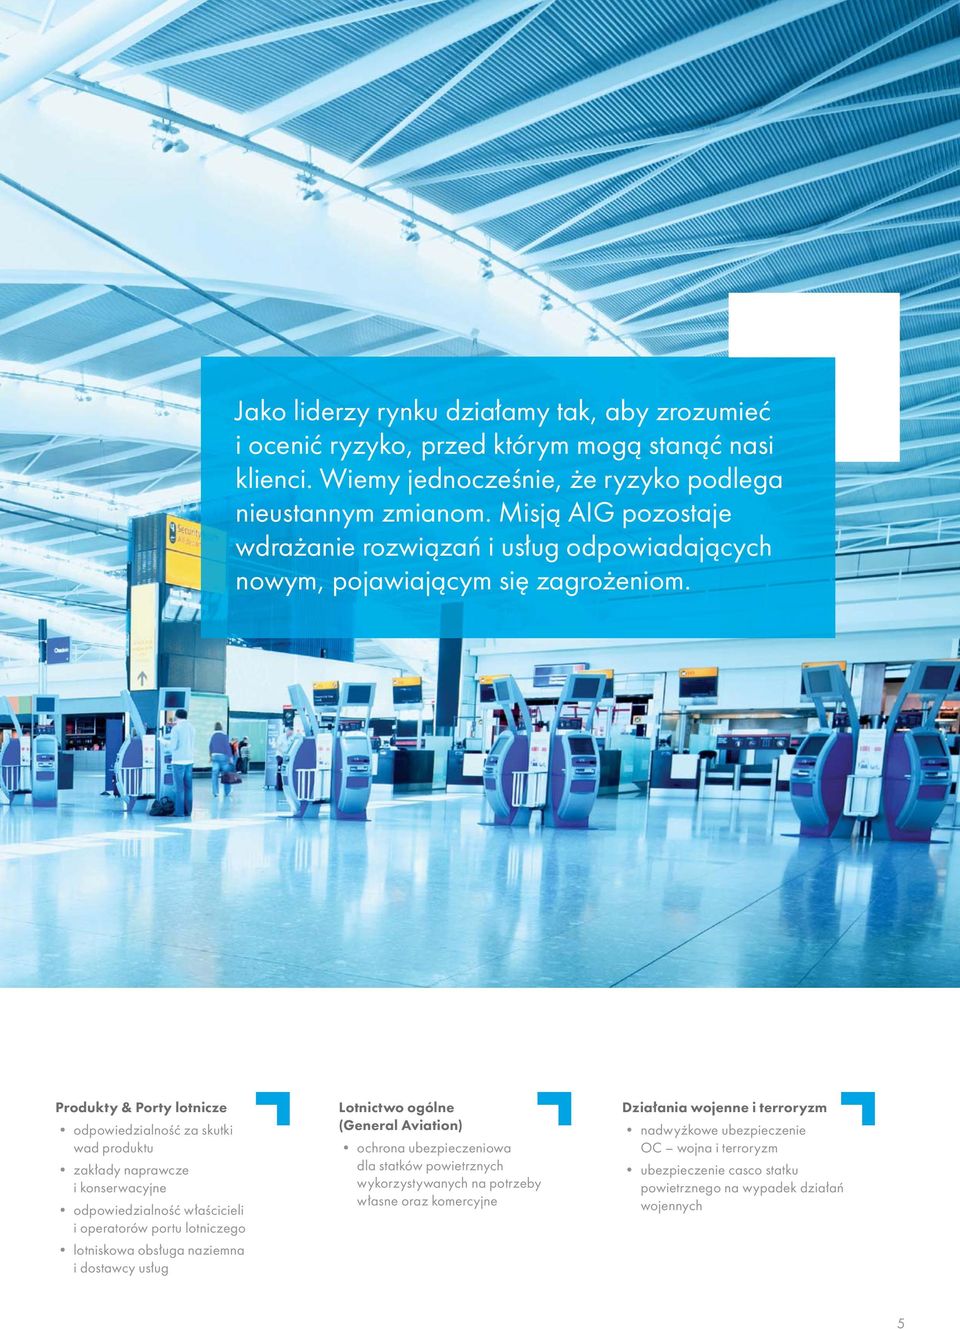 Produkty & Porty lotnicze odpowiedzialność za skutki wad produktu zakłady naprawcze i konserwacyjne odpowiedzialność właścicieli i operatorów portu lotniczego lotniskowa obsługa naziemna